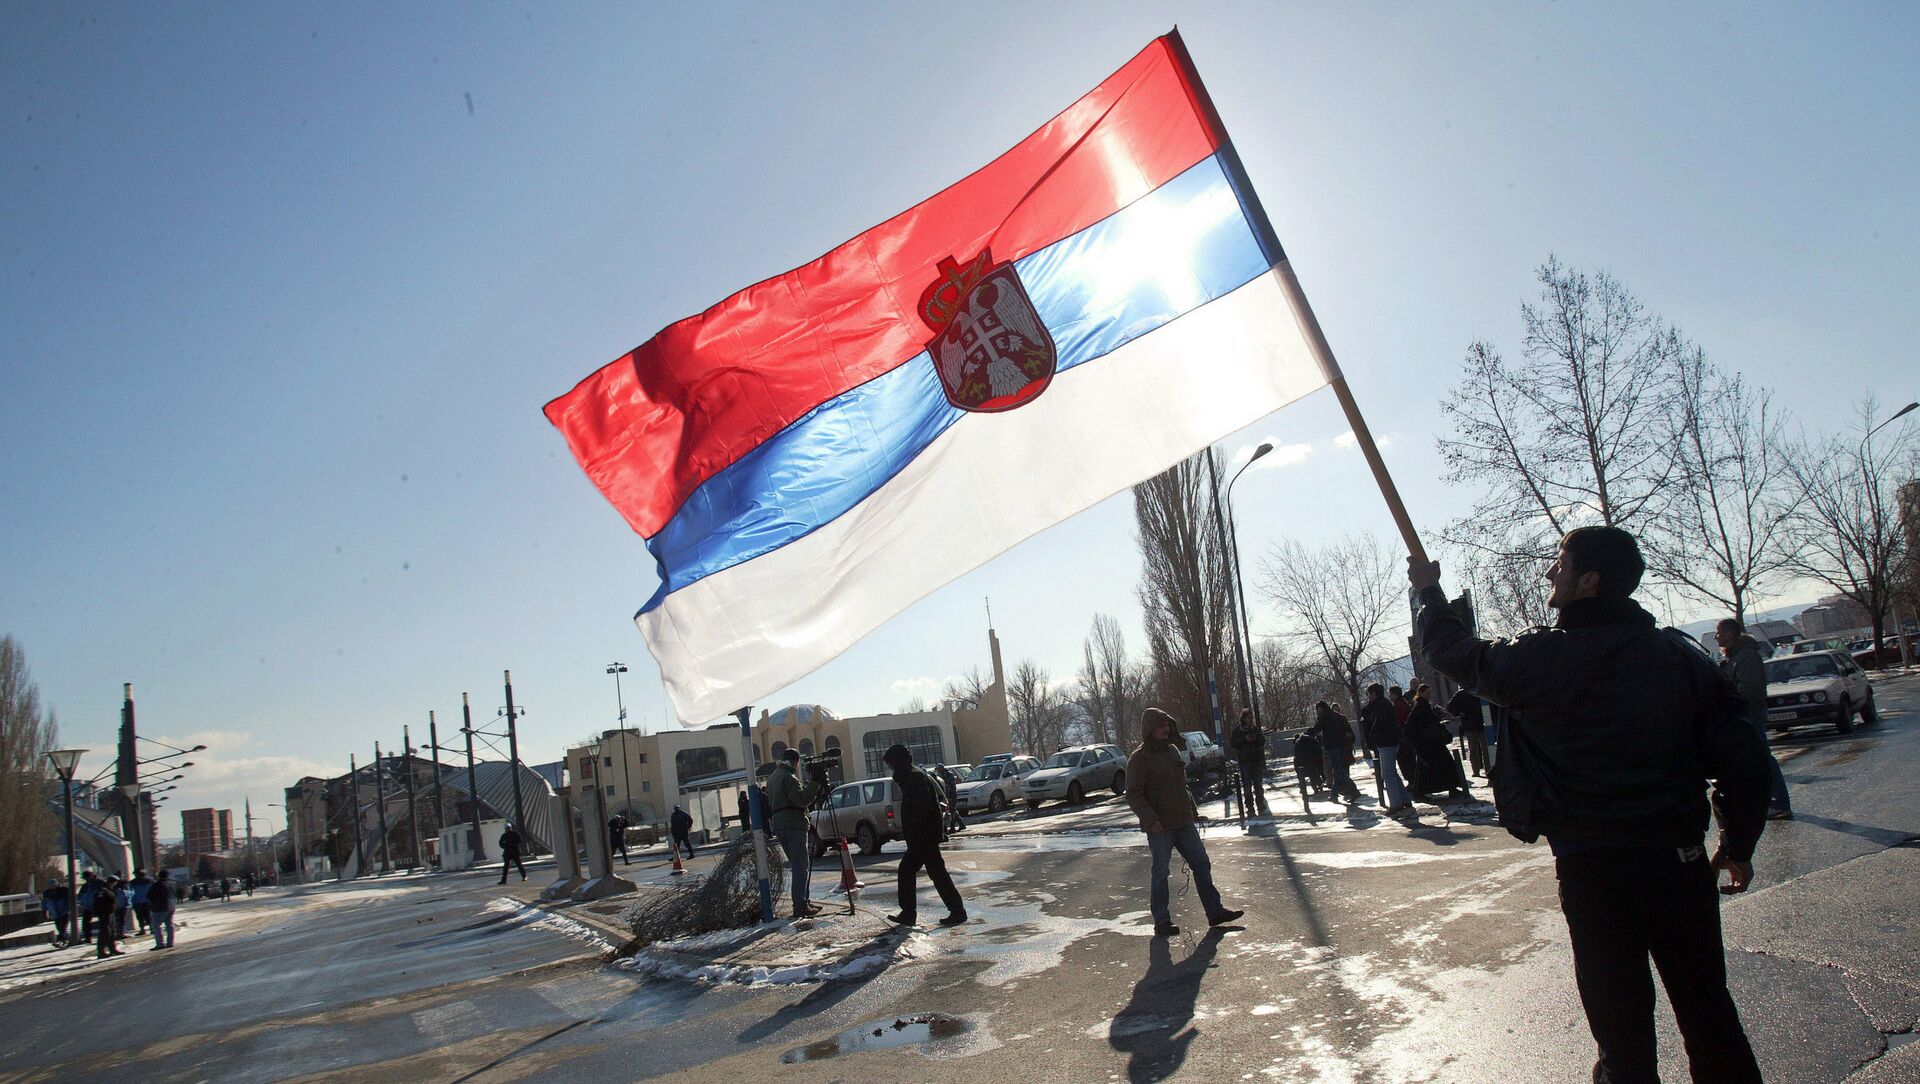 Србин са заставом Србије на КиМ, 17. фебруара 2008. године - архивска фотографија - Sputnik Србија, 1920, 21.04.2021